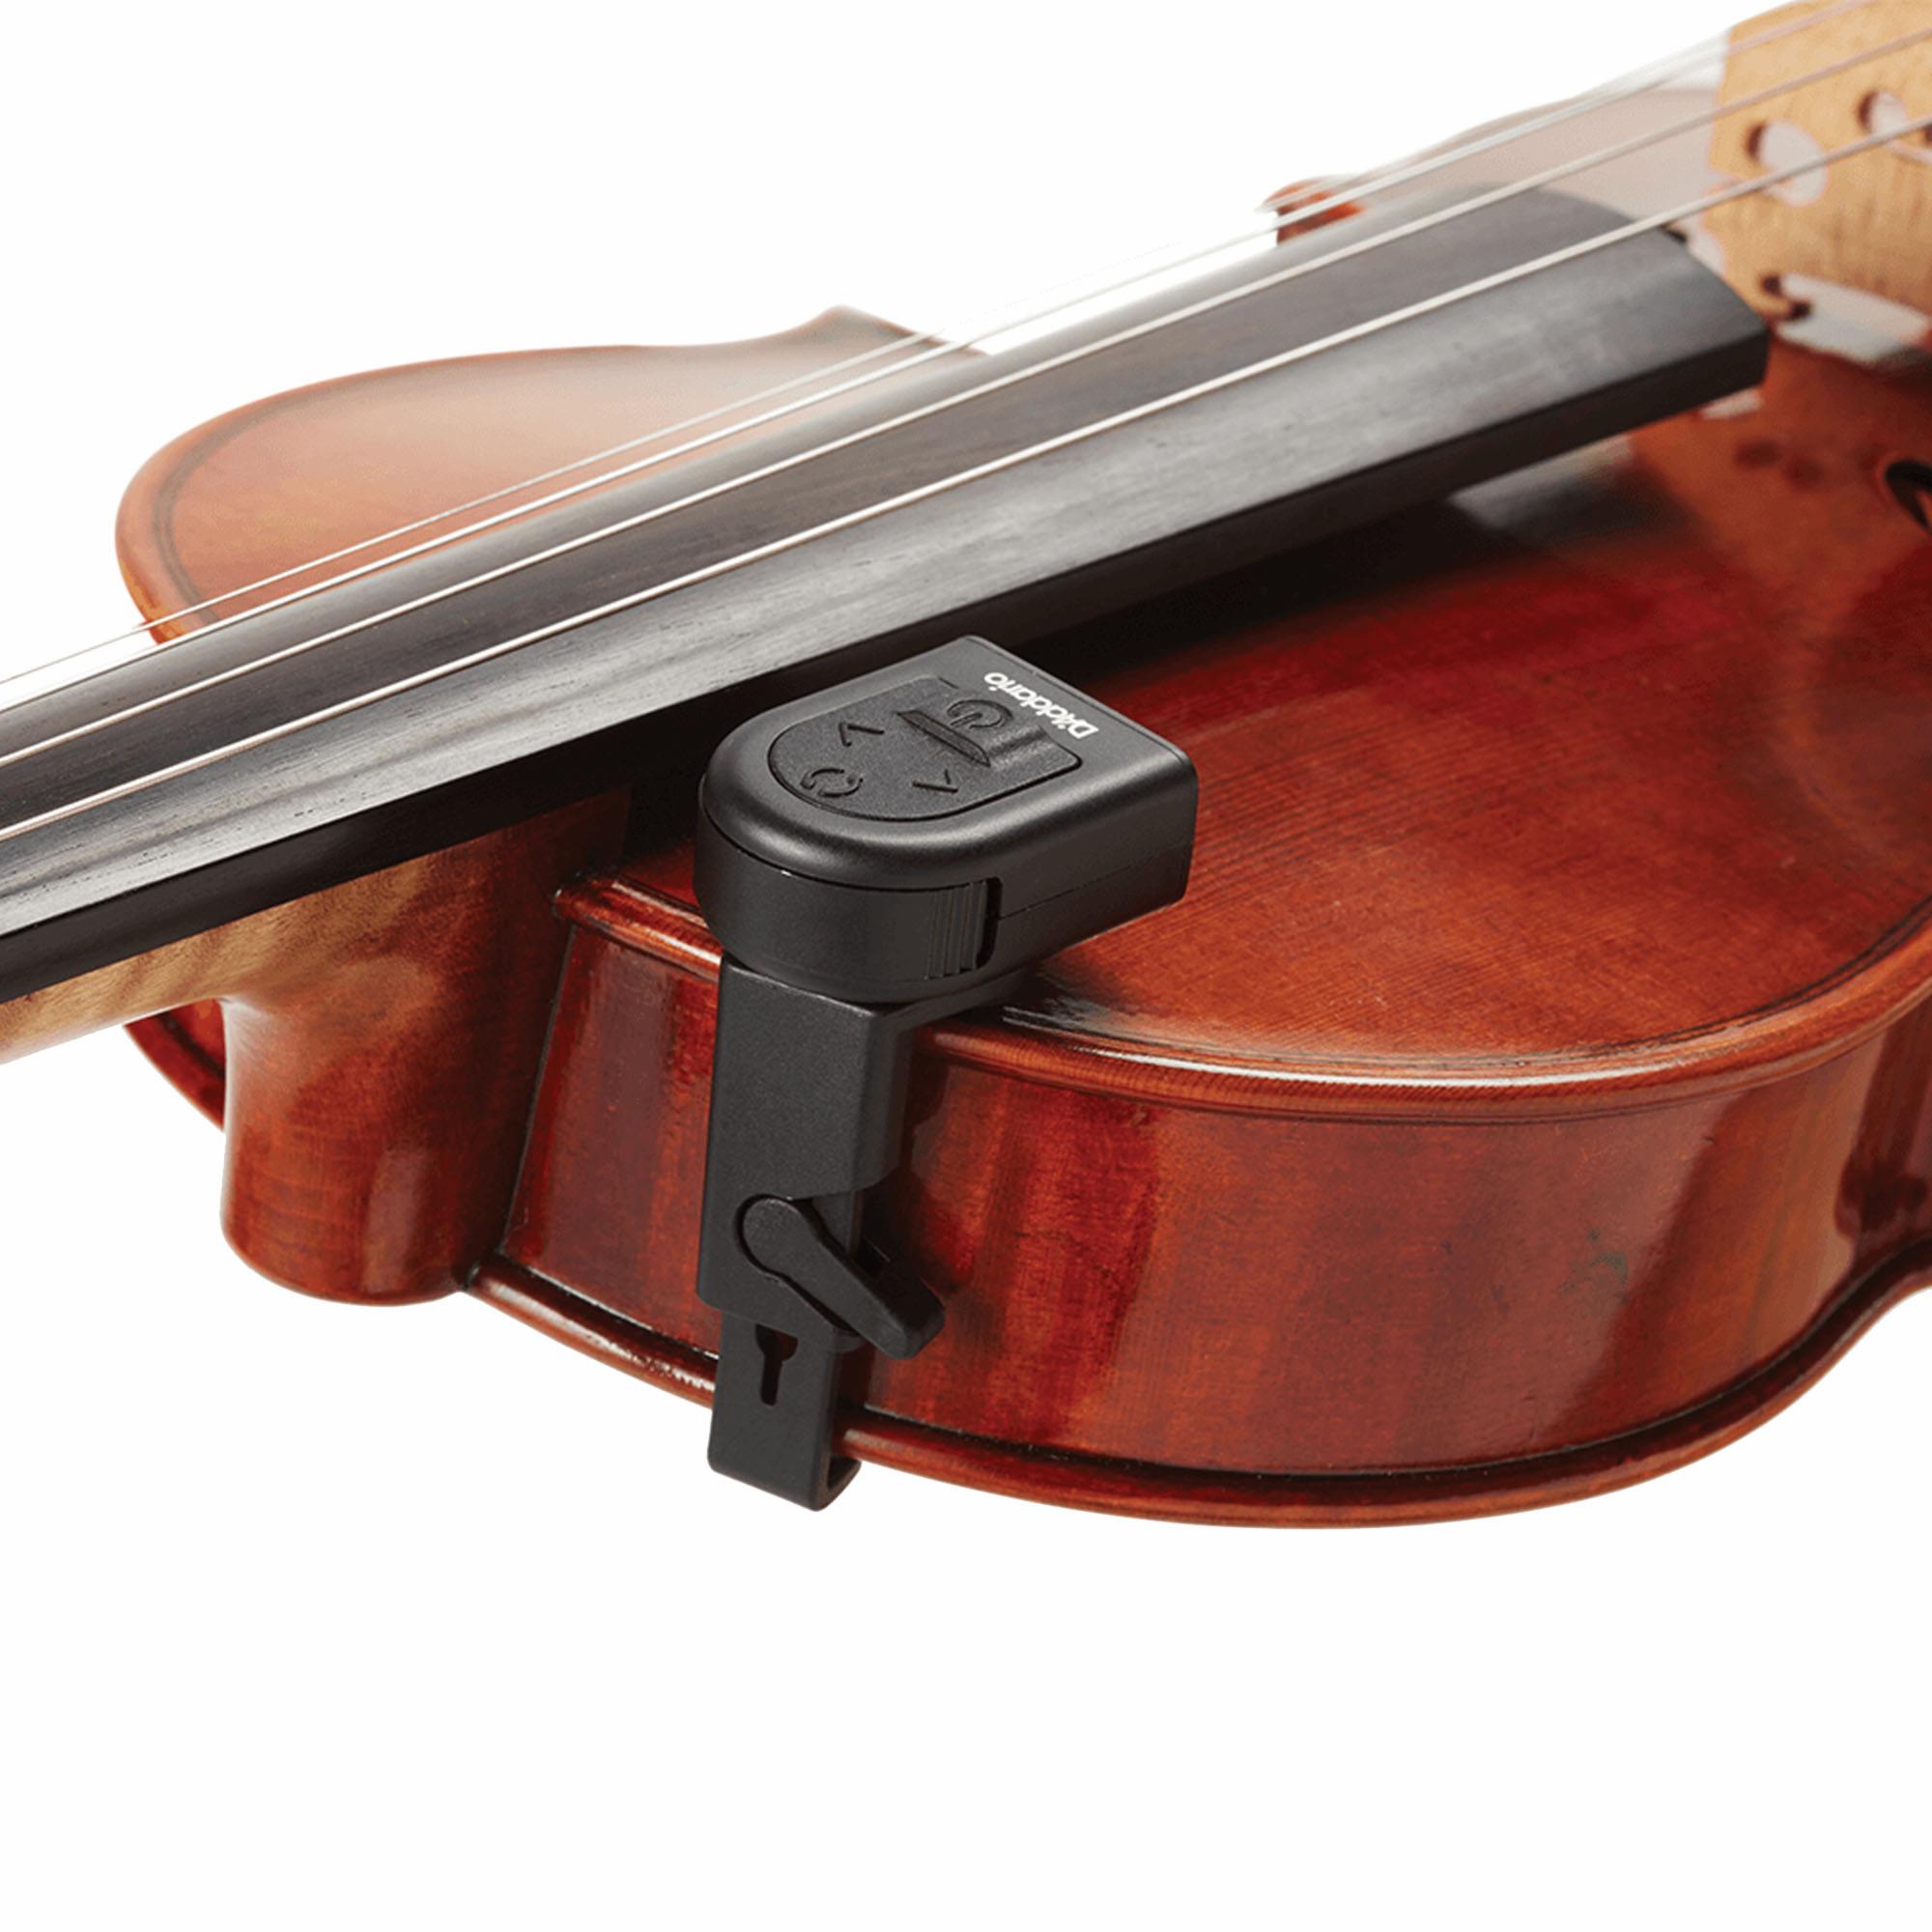 D'Addario Violin and Viola Micro Tuner